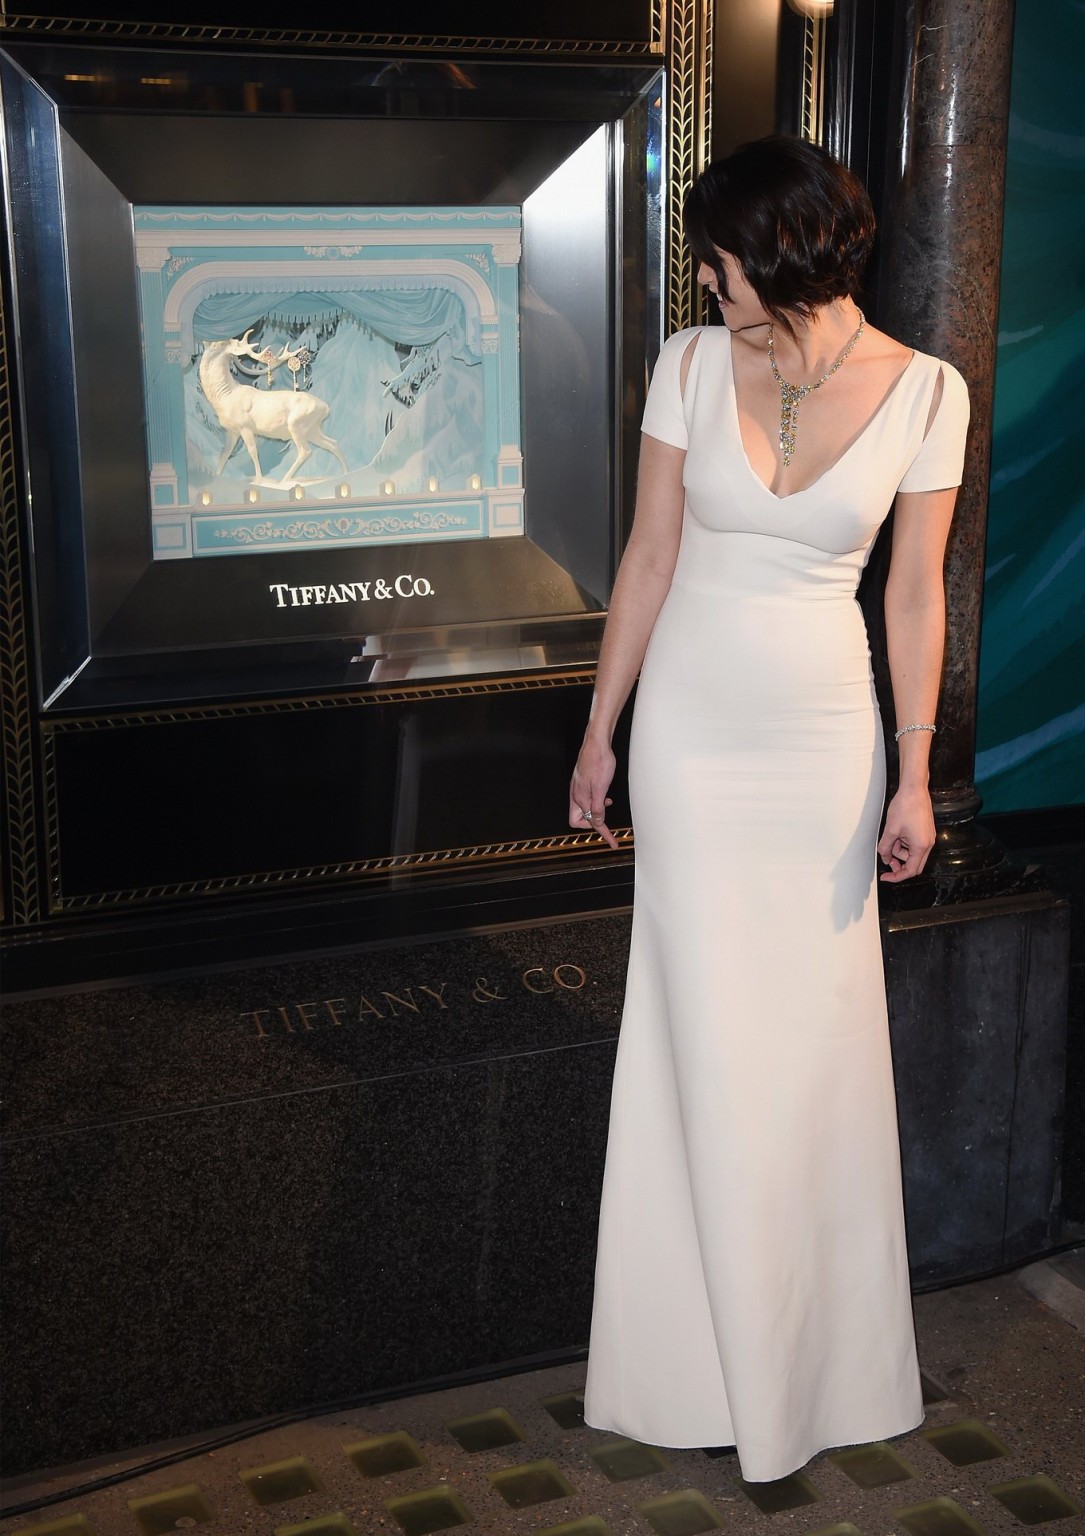 Gemma arterton zeigt großes Dekolleté im engen weißen Kleid
 #75150234